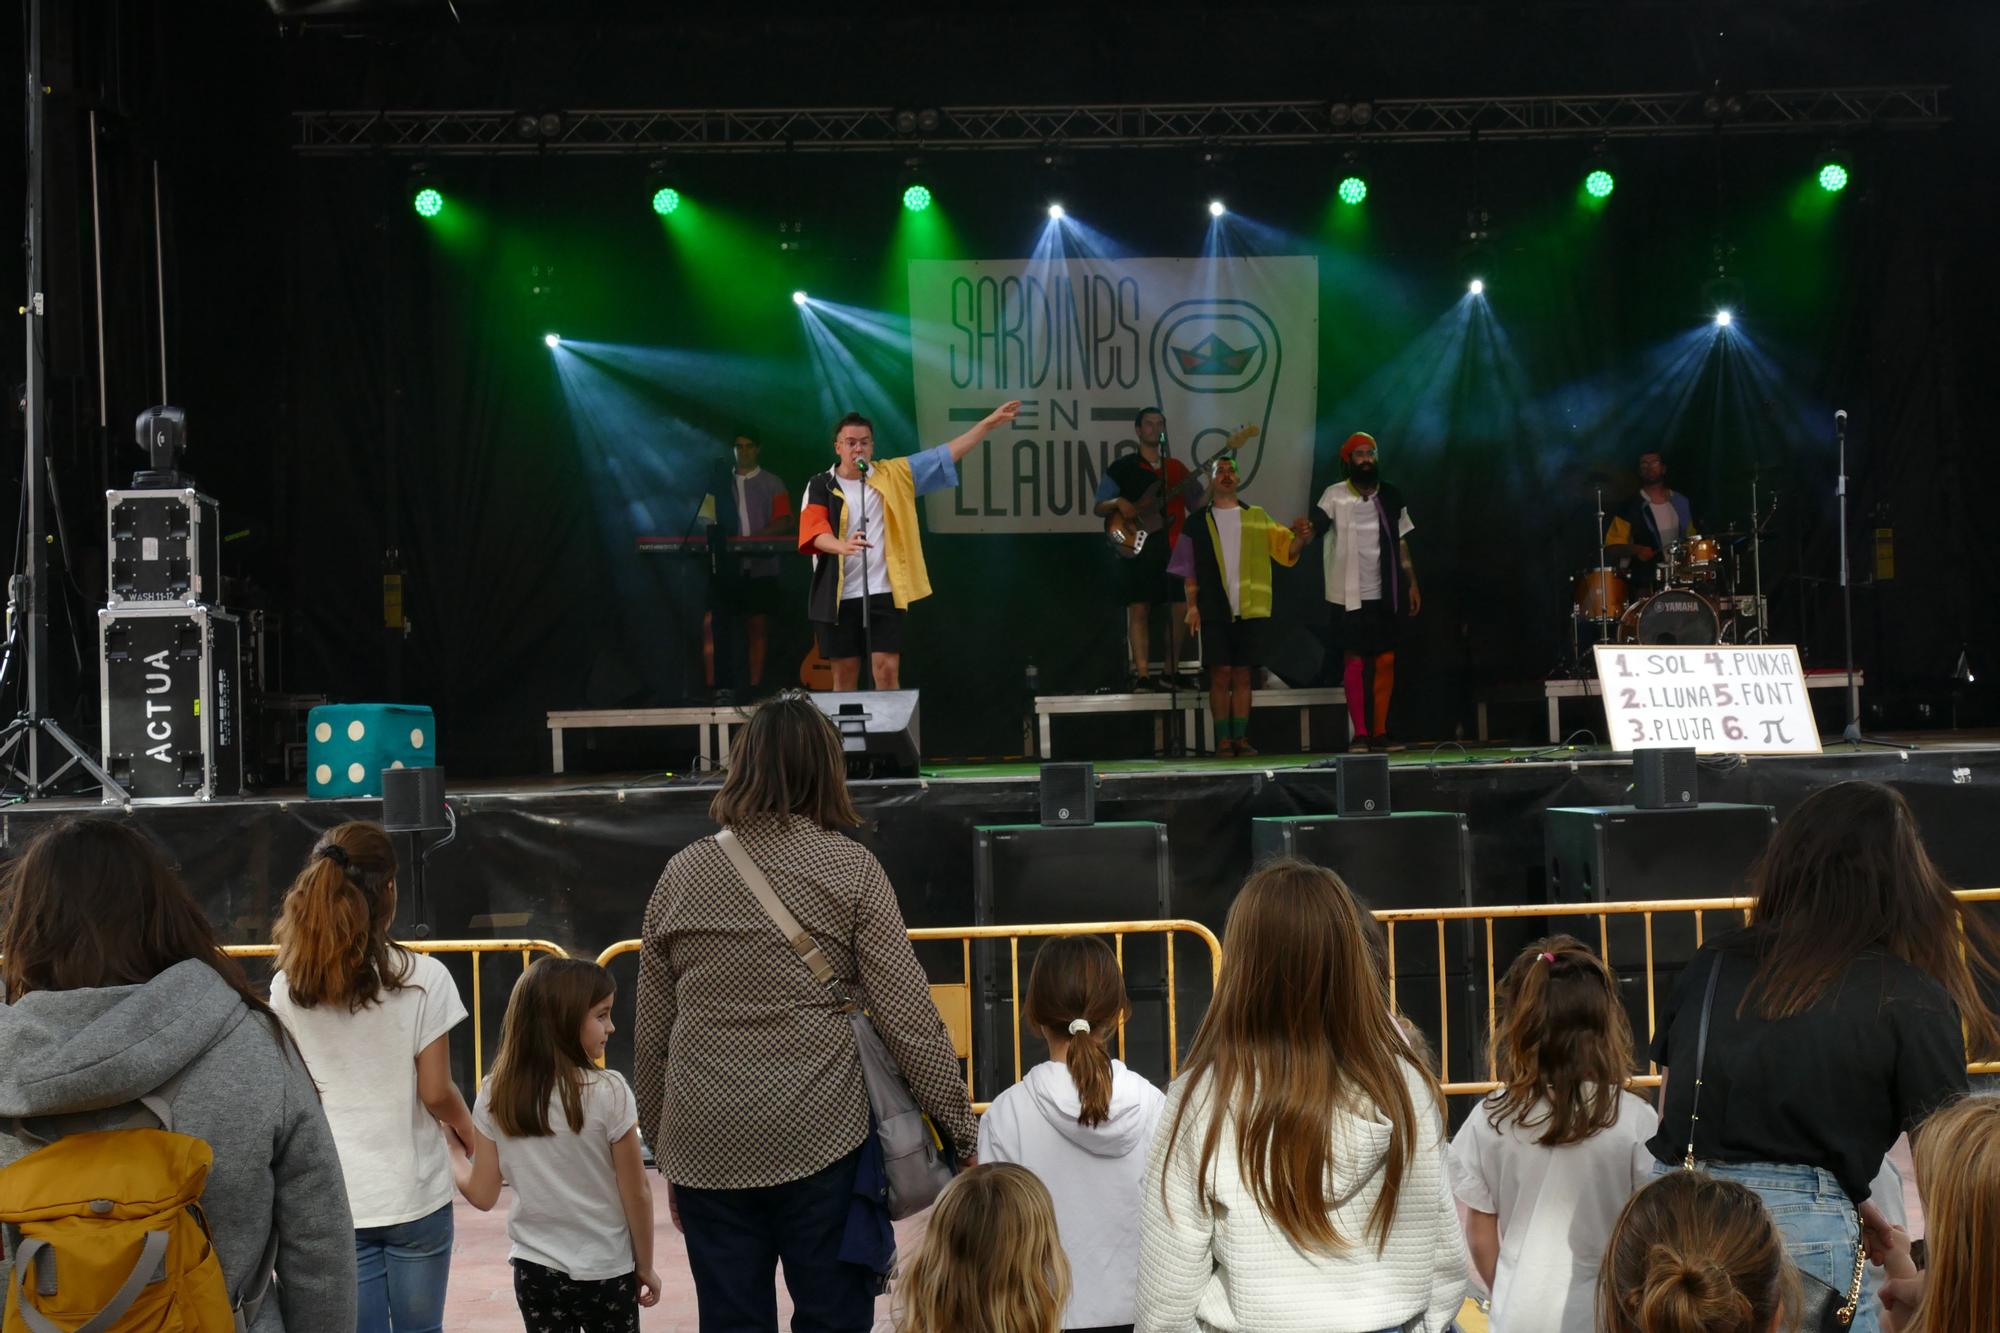 El grup Sardines en Llauna anima la mainada a Figueres